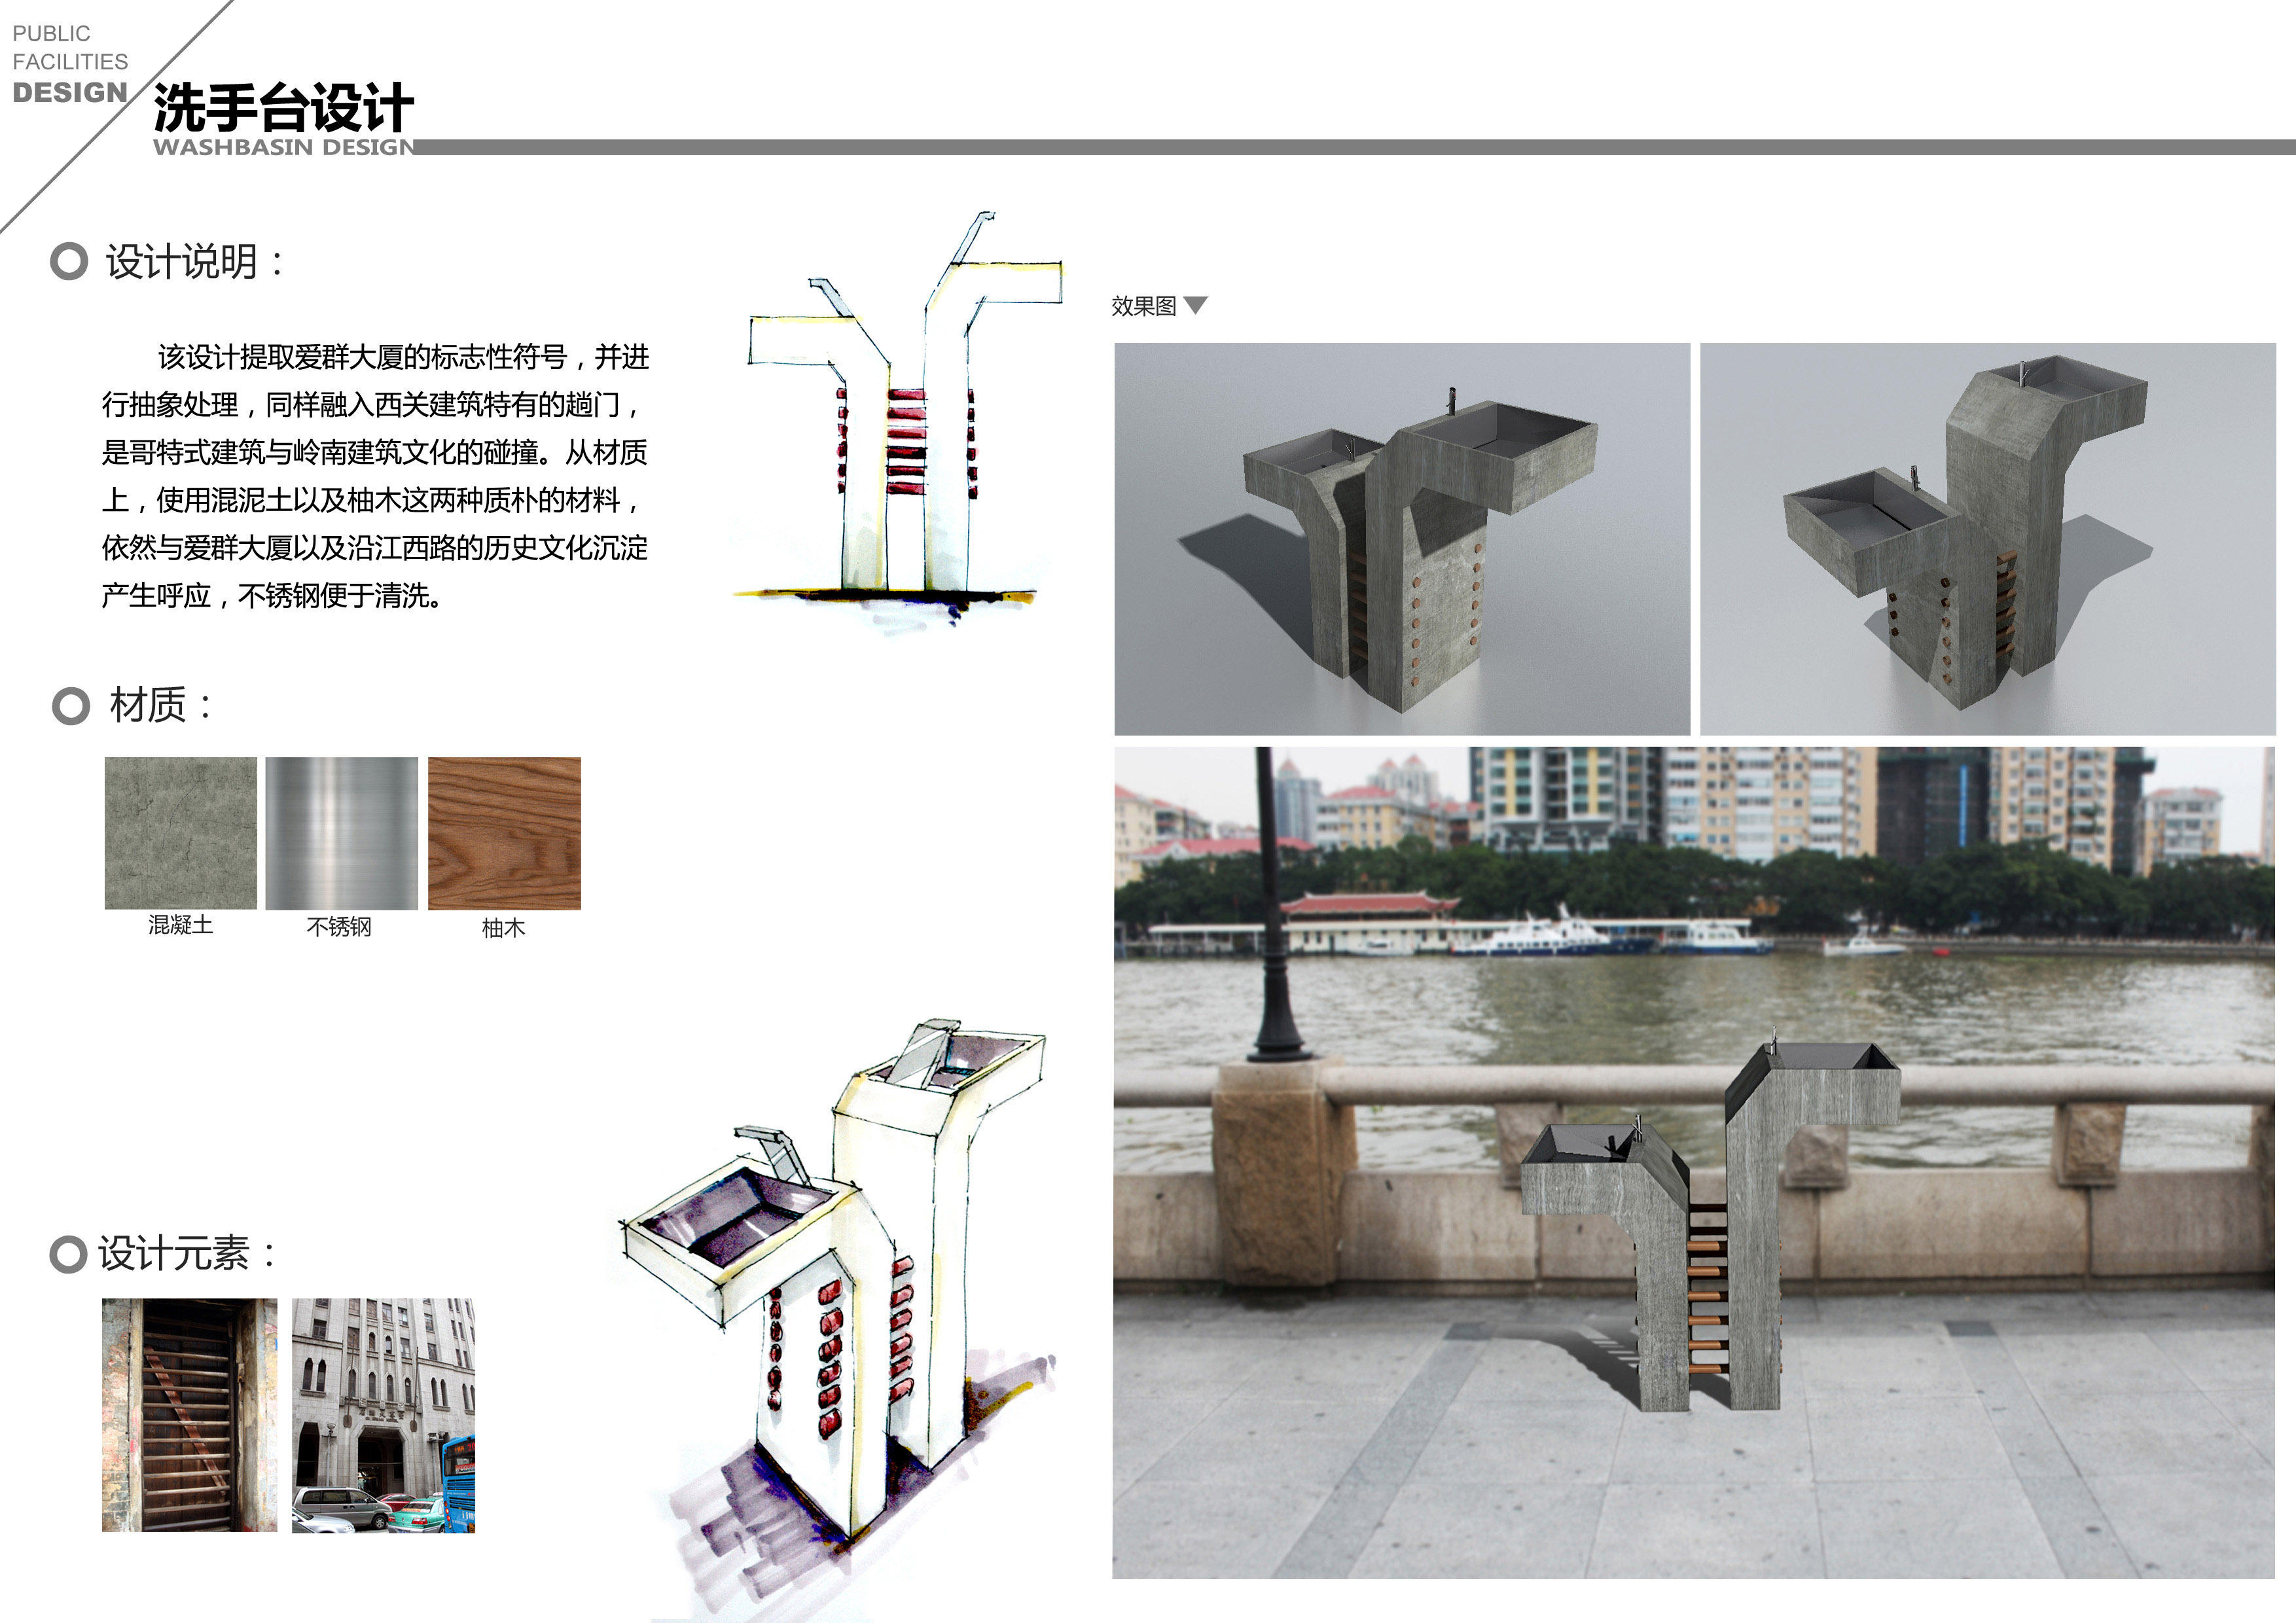 广州沿江西路公共设施改良方案